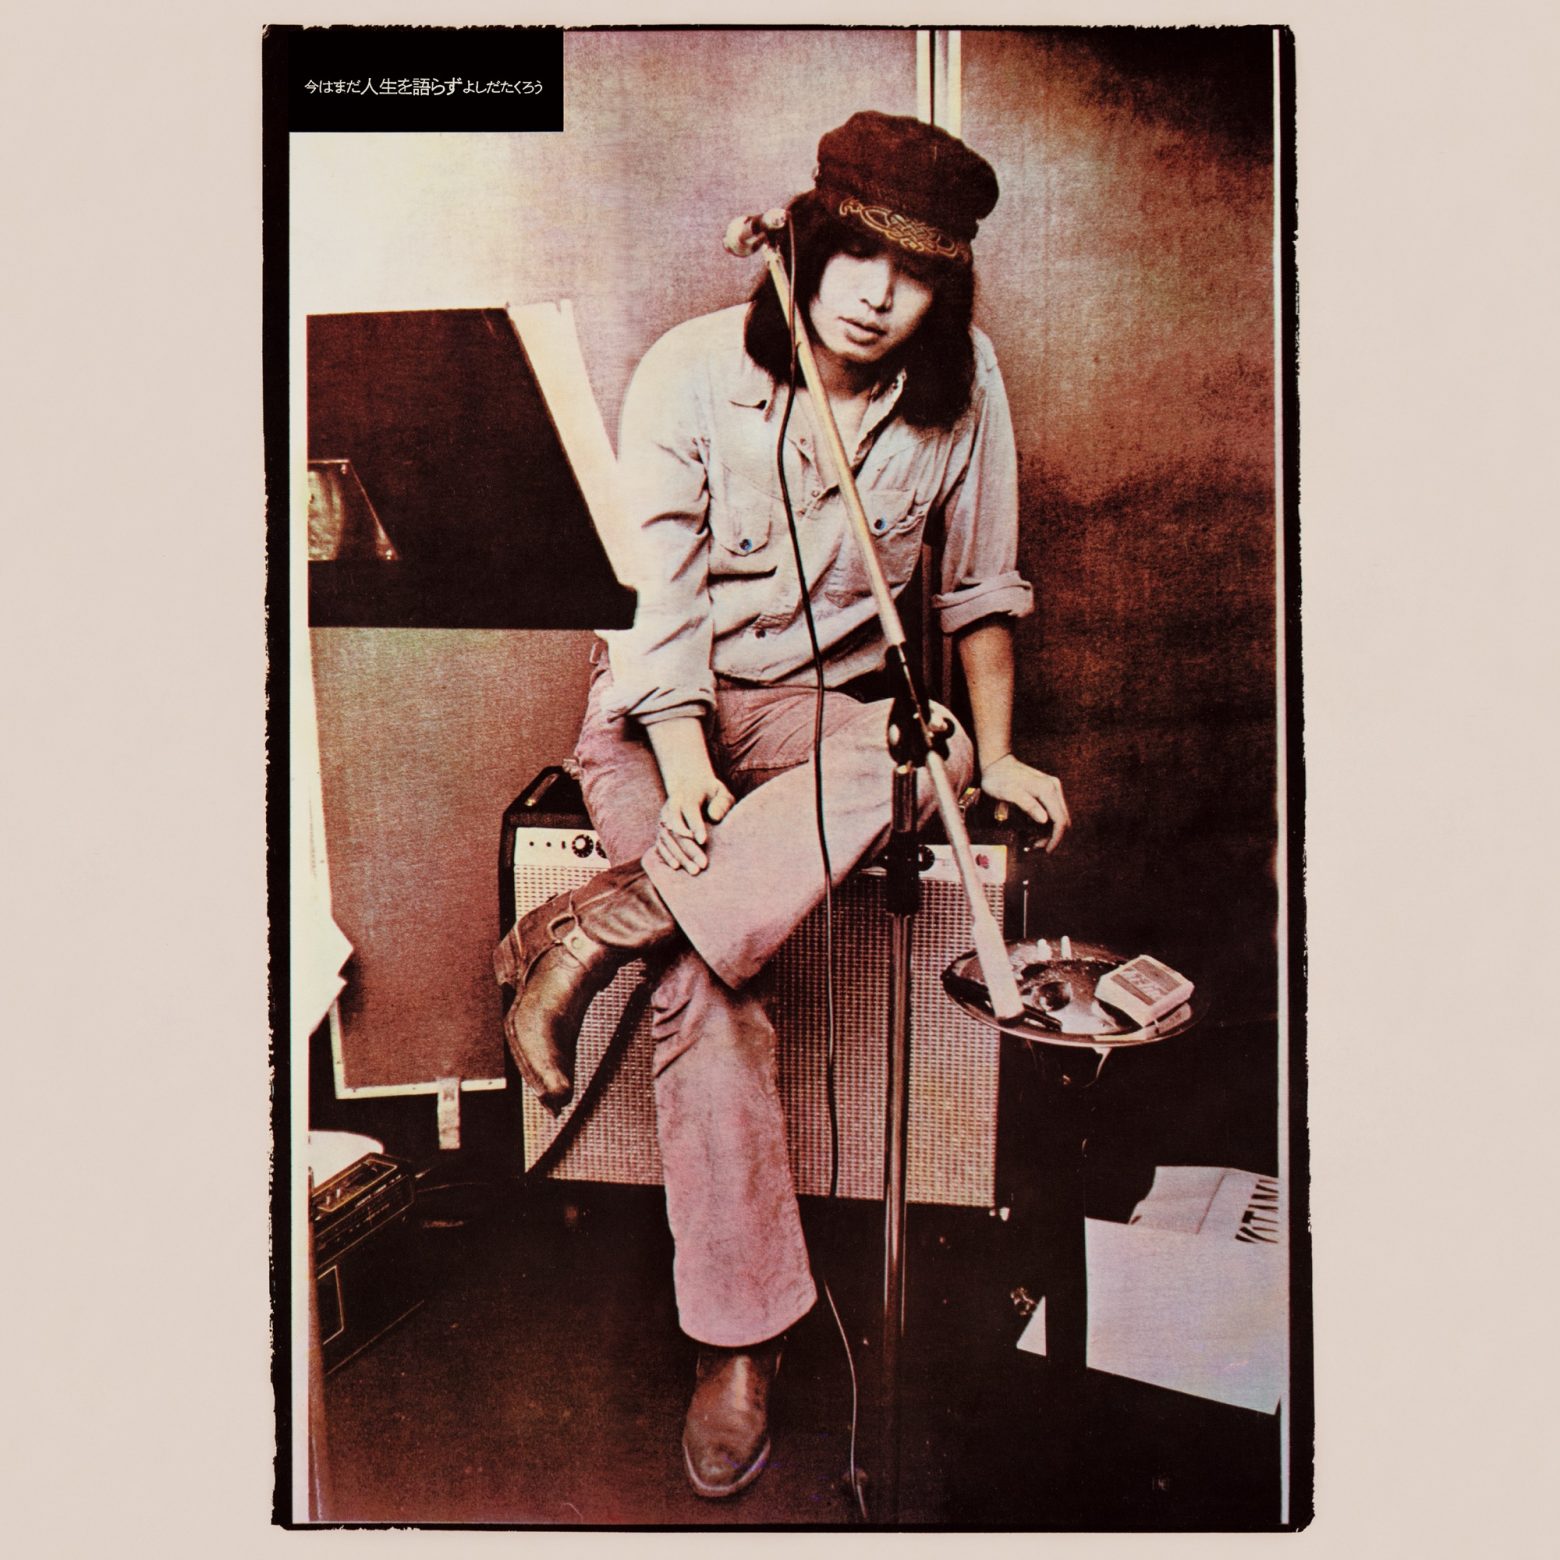 吉田拓郎、アルバム「今はまだ人生を語らず」をオリジナル収録通り完全復刻 「COMPLETE TAKURO TOUR 1979 完全復刻盤」と12/21同時発売